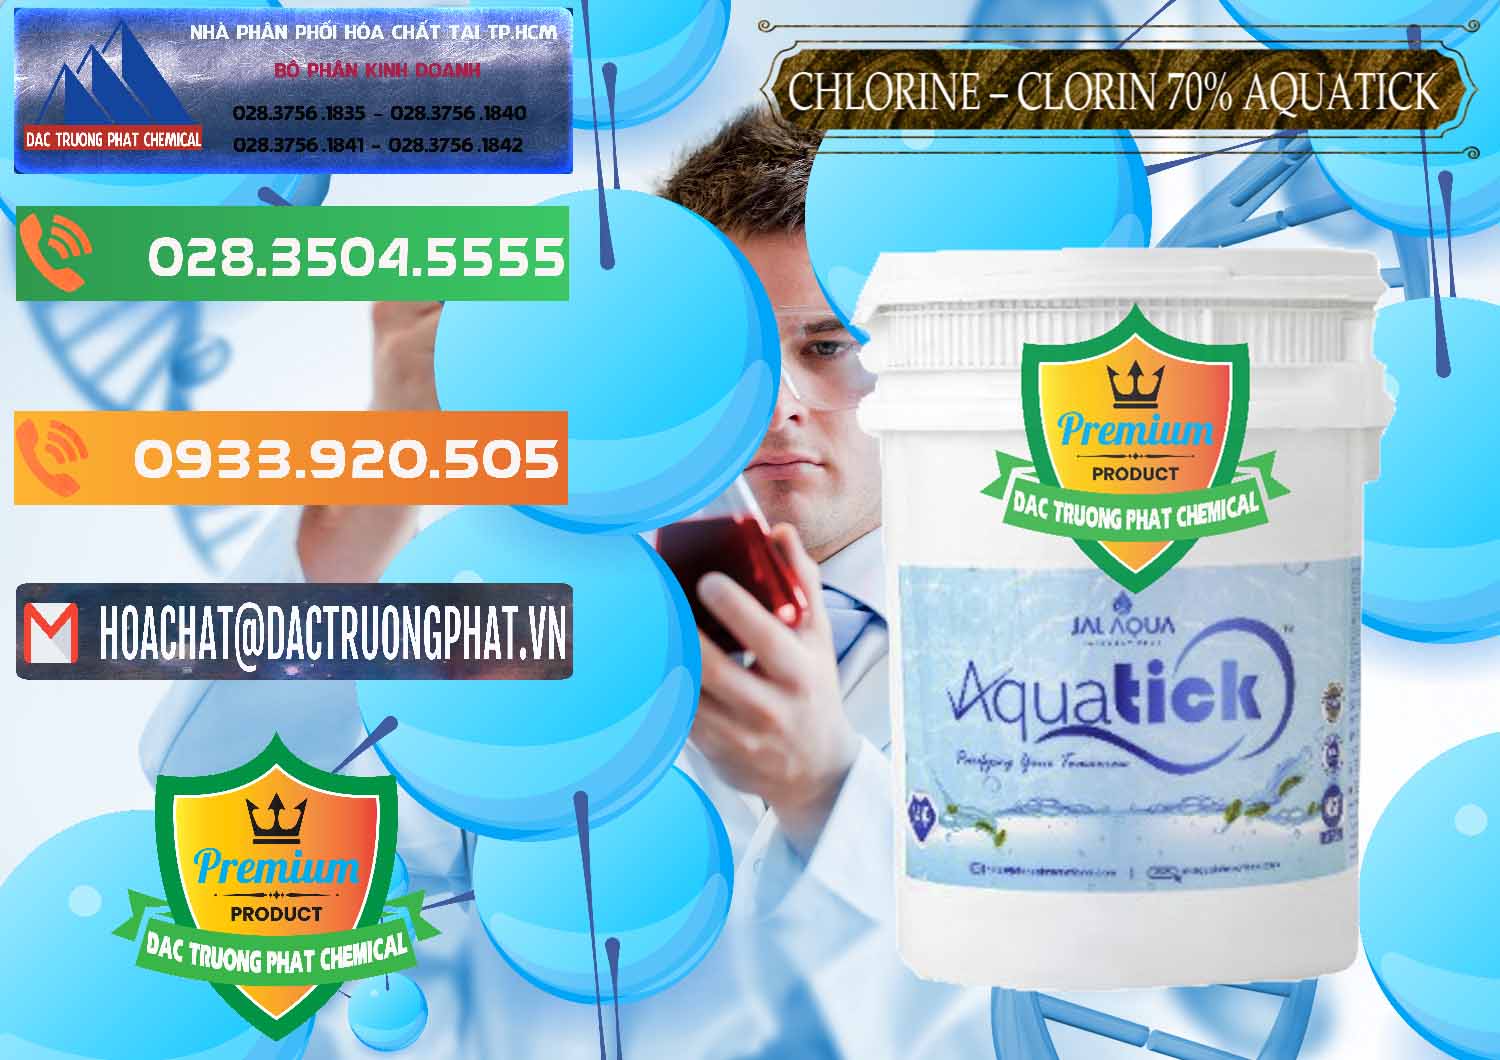 Cty nhập khẩu _ bán Chlorine – Clorin 70% Aquatick Thùng Cao Jal Aqua Ấn Độ India - 0237 - Đơn vị cung cấp & kinh doanh hóa chất tại TP.HCM - hoachatxulynuoc.com.vn